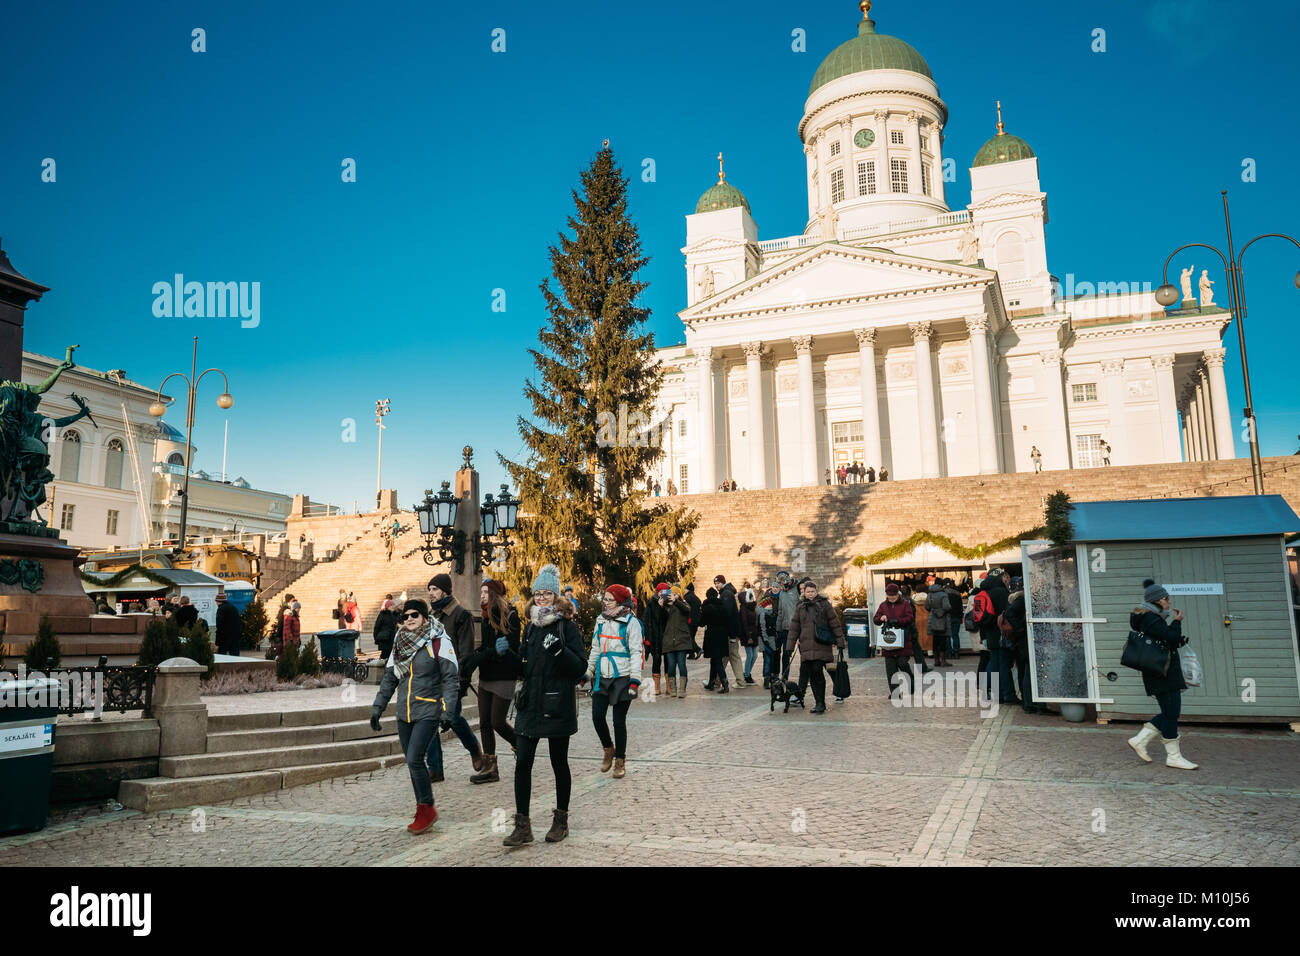 Helsinki, Finlande - le 11 décembre 2016 : Les gens autour de l'arbre de Noël sur la place du Sénat avec sa célèbre cathédrale Luthérienne au Winter journée ensoleillée Banque D'Images